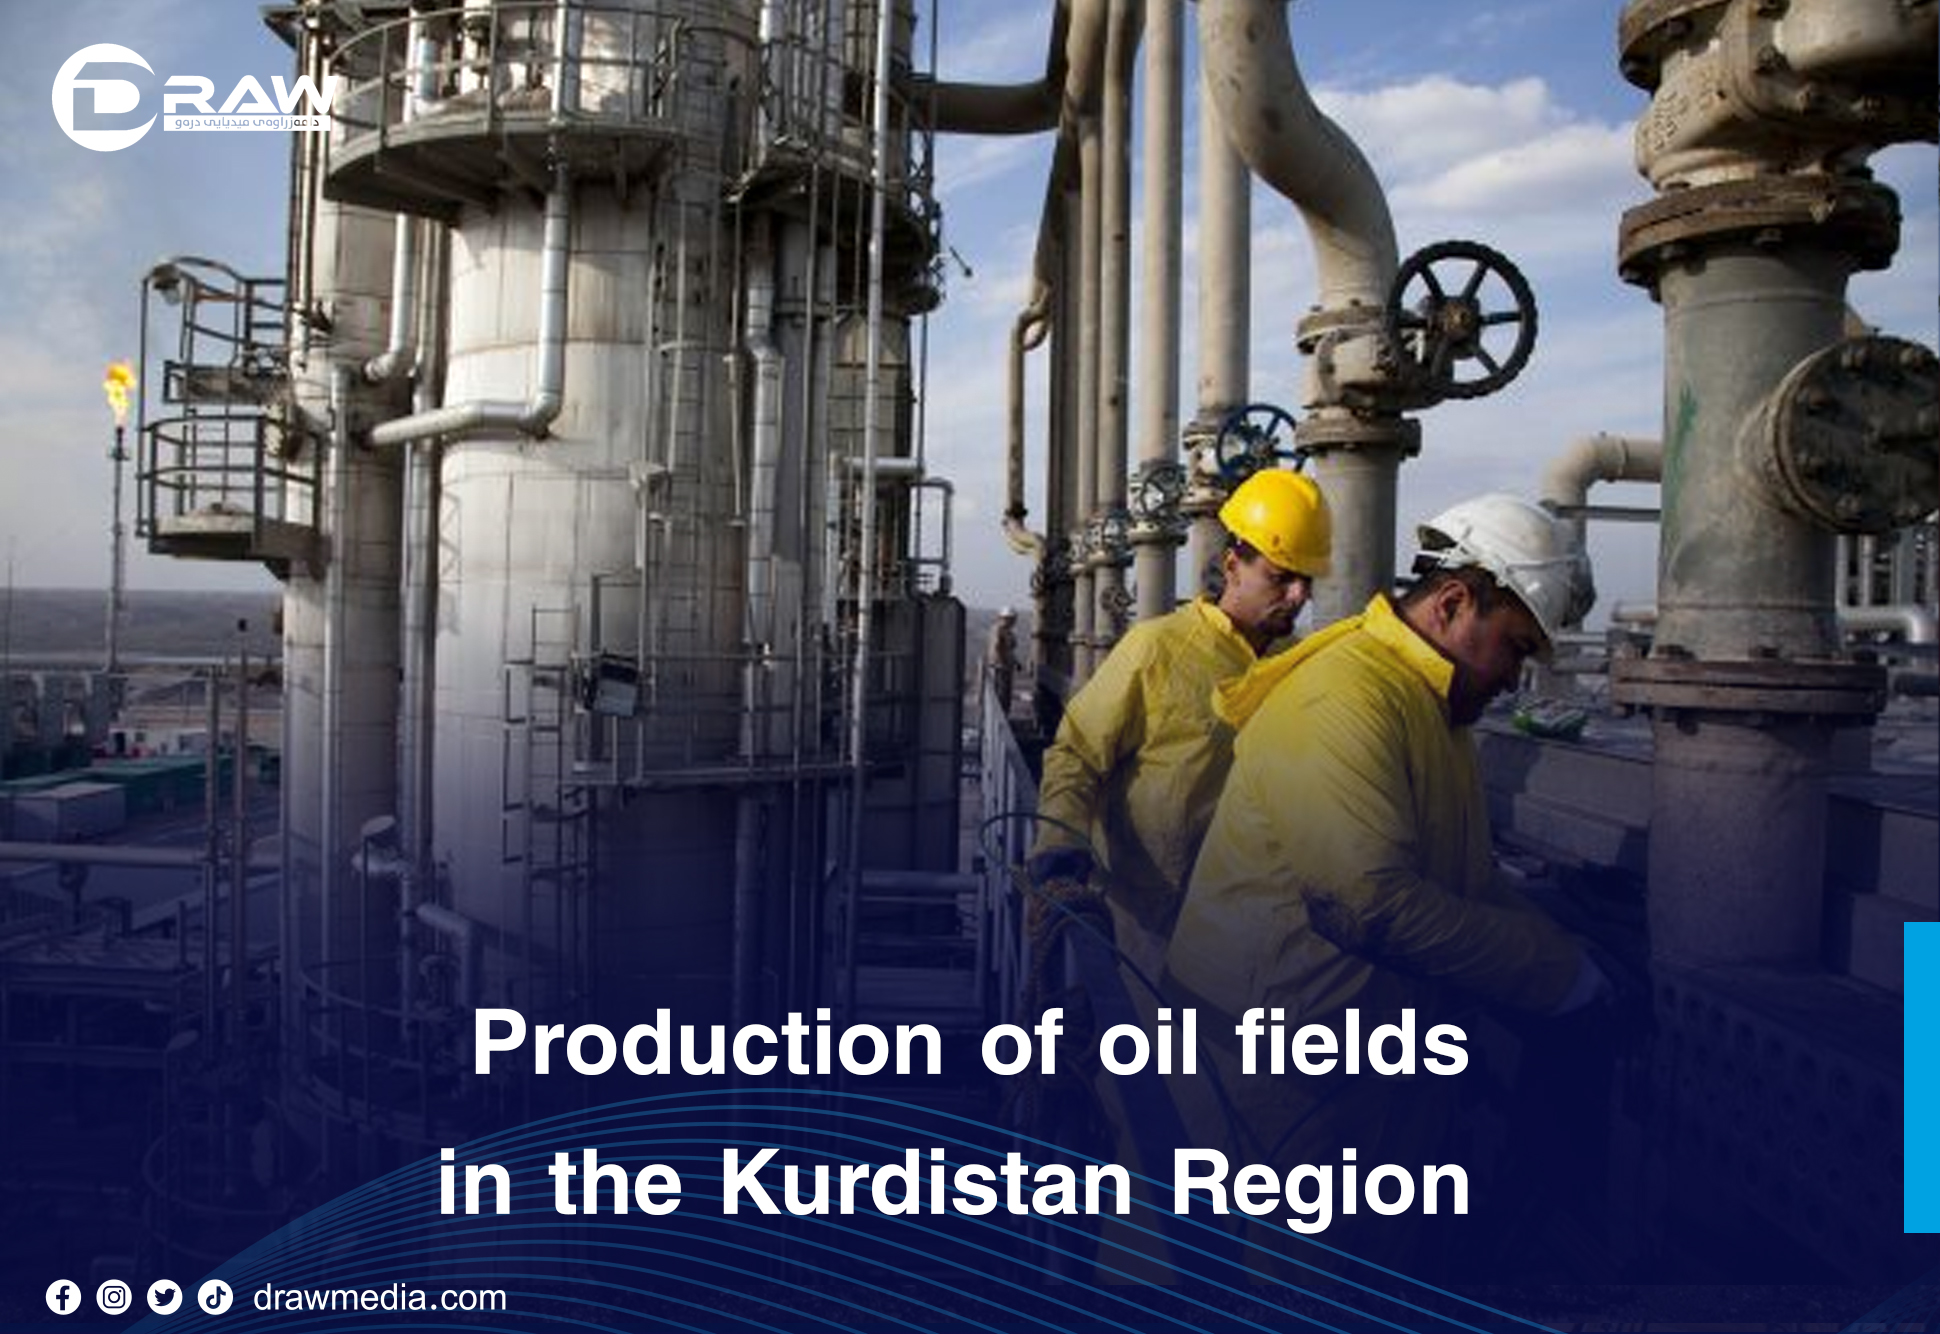 DrawMedia.net / Production of oil fields in the Kurdistan Region